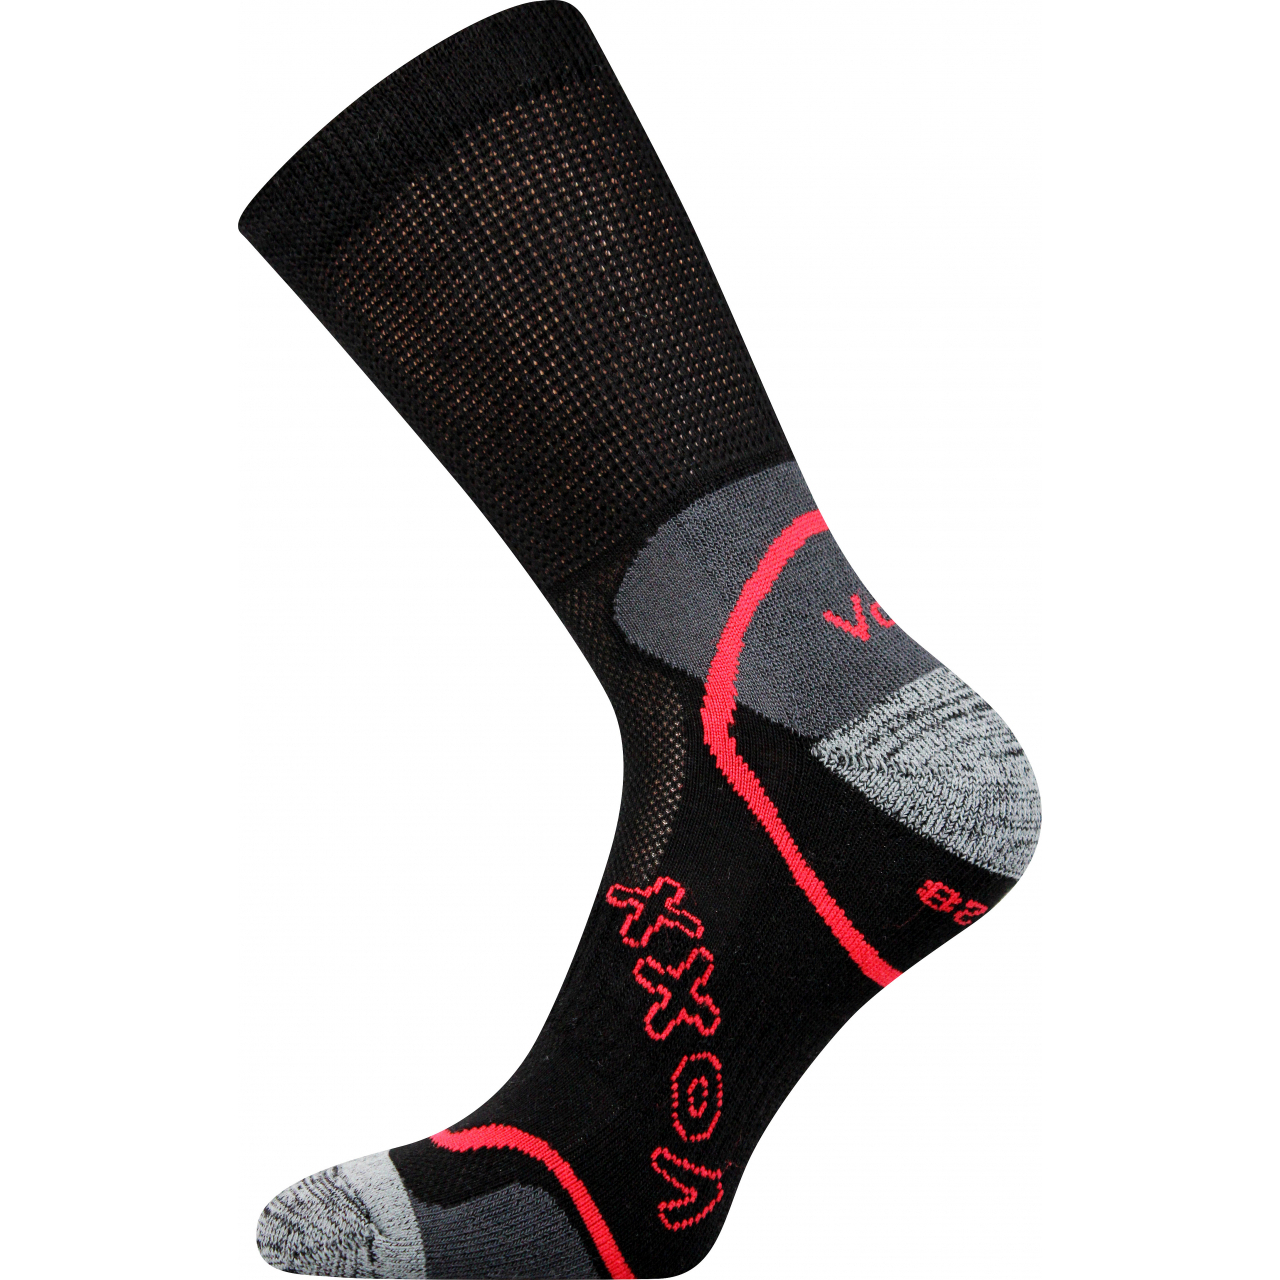 Ponožky sportovní unisex Voxx Meteor - černé, 35-38